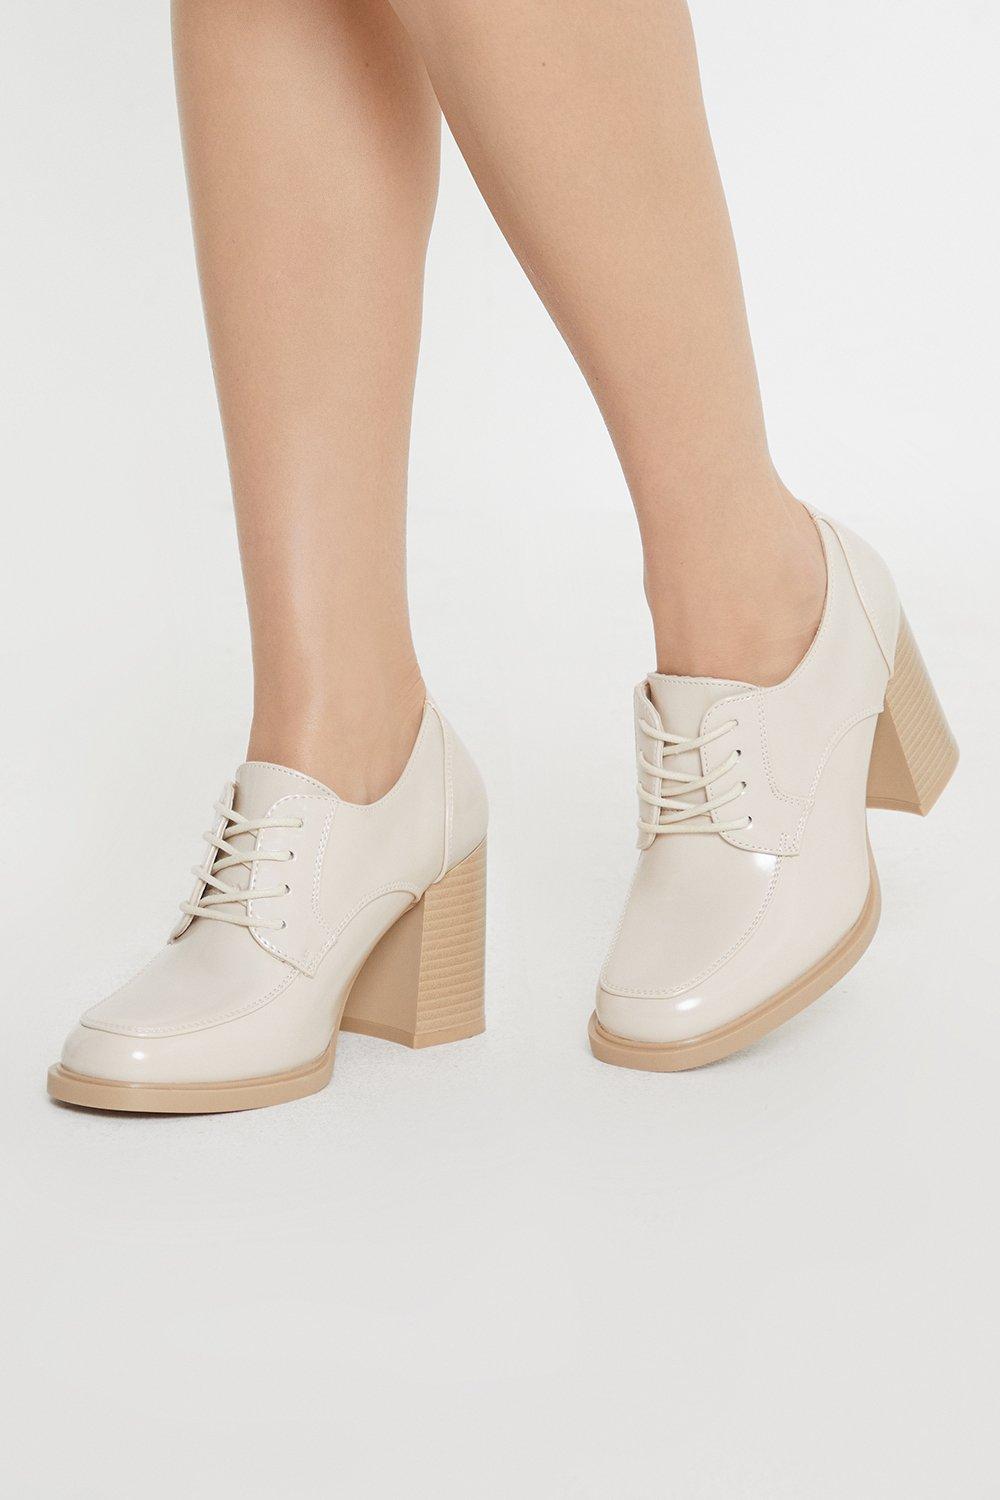 Women’s Principles: Lara Front Lace Up High Block Heel Shoe - beige - 4